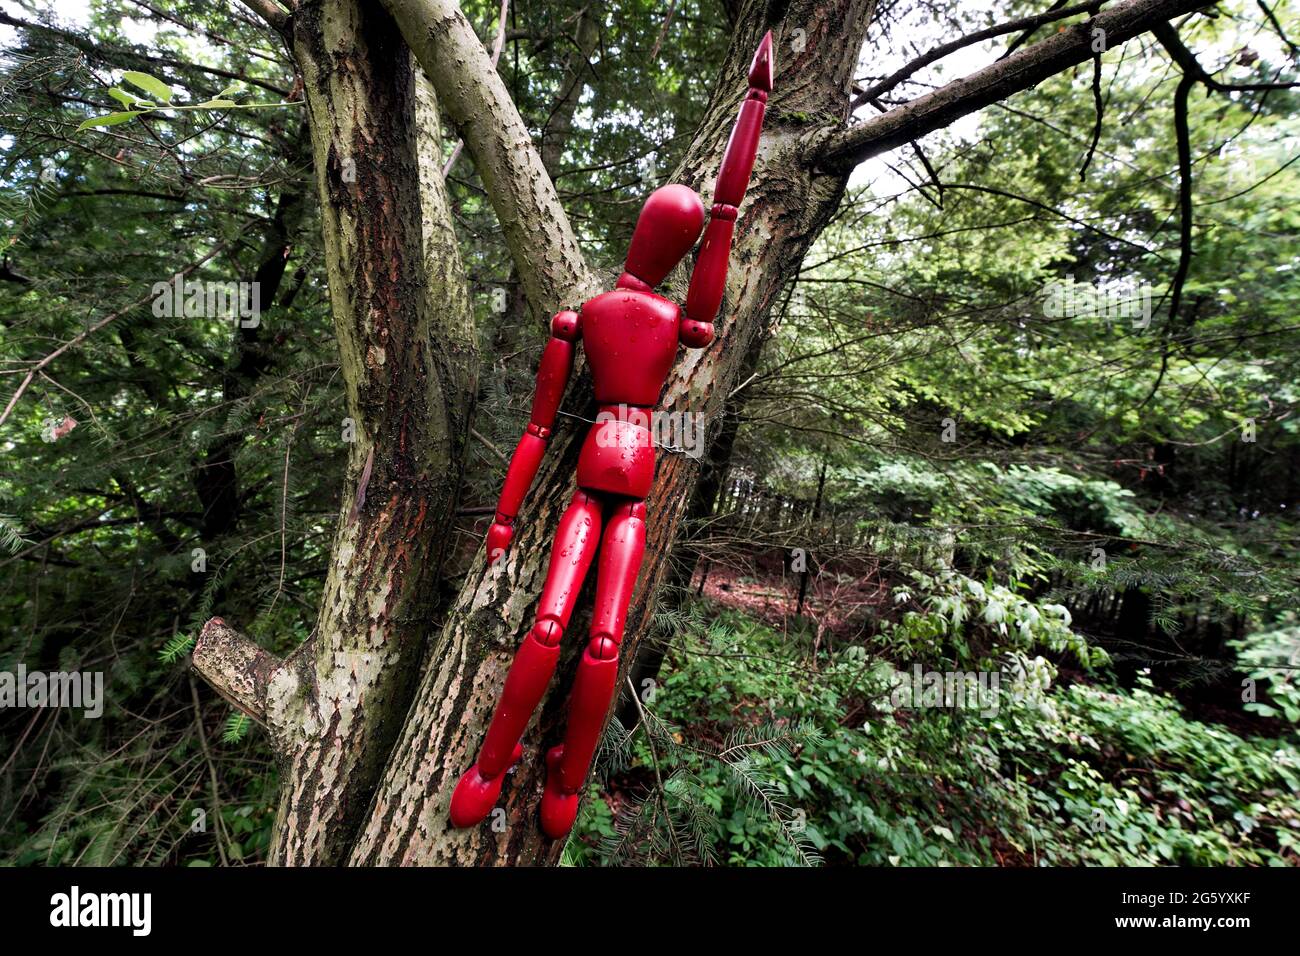 Rote Holzfiguren sind in einem deutschen Wald an Bäume gebunden. Mit dieser Kampagne macht ein Künstler auf den Umgang mit dem Wald aufmerksam. Die in Form eines Kreuzes angeordneten Puppen symbolisieren den sterbenden Wald. --- Rote Holzfiguren sind an Bäumen in einem Wald zwischen Herdecke und Wetter a.d.Ruhr gebunden. Mit dieser Aktion macht der Künstler Knut Waschkau auf den Umgang mit dem Wald aufmerksam. Die in Kreuzesform angeordneten Gliederpuppen stehen symbolisch für das Sterben der Wälder. Stockfoto